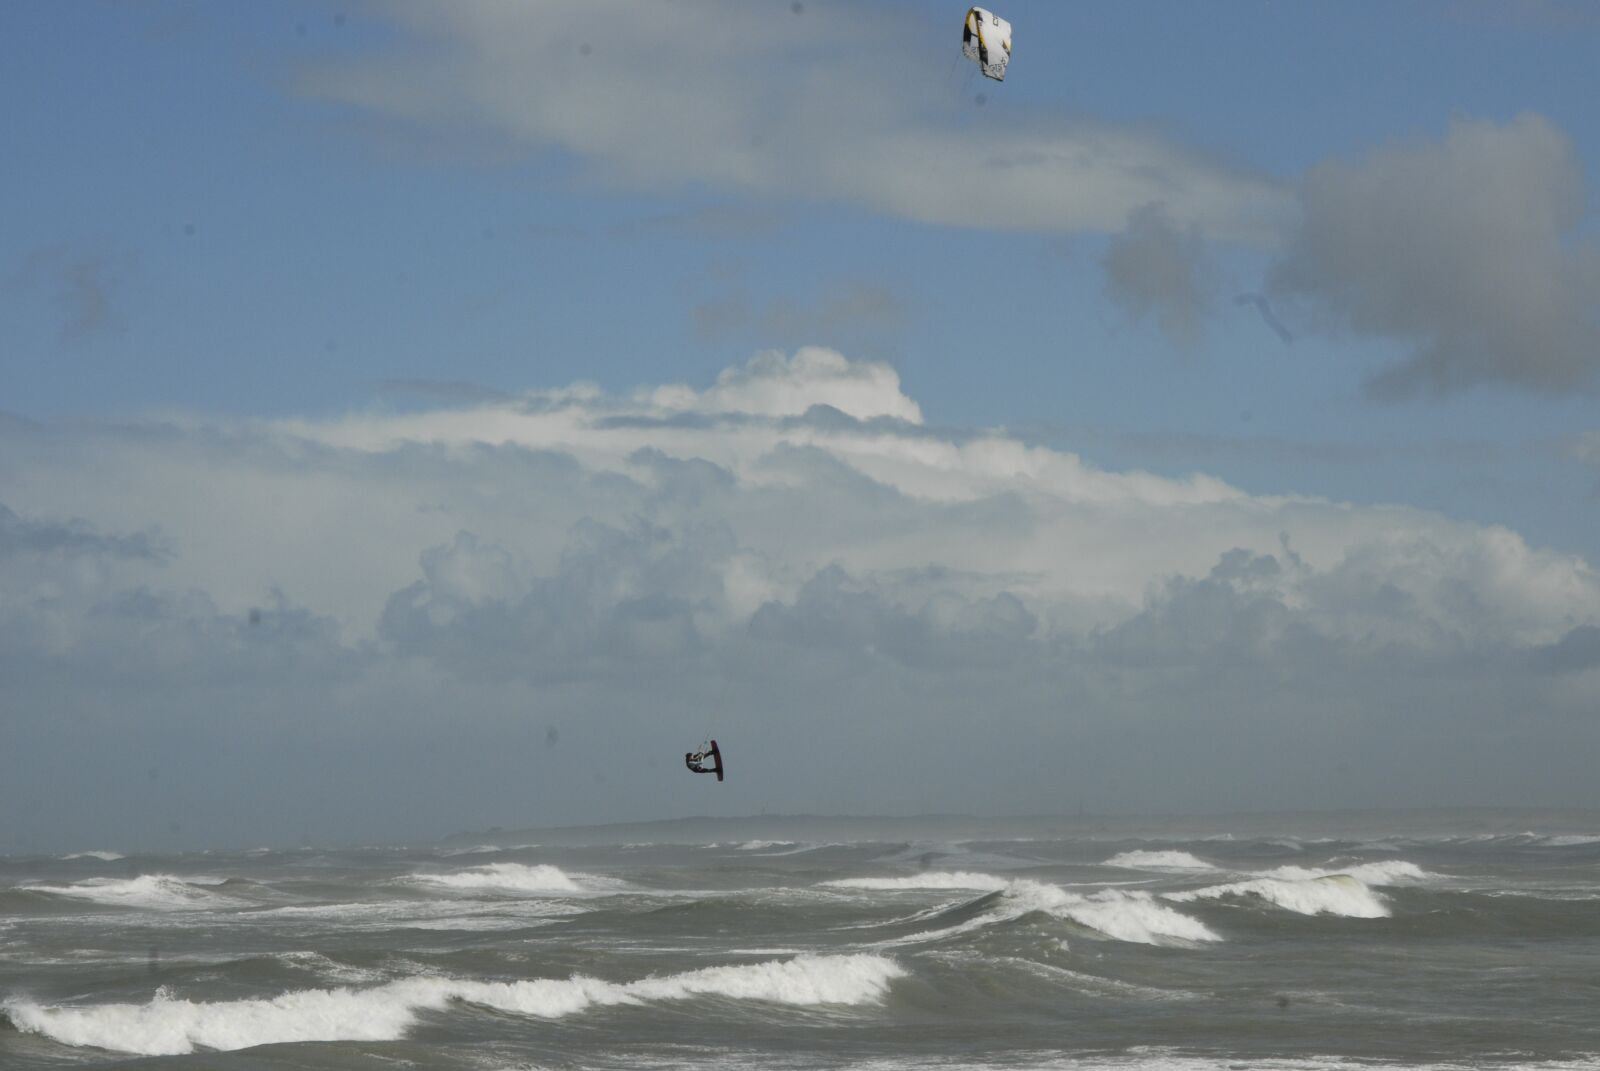 Nikon D200 sample photo. Sea, kitesurfing, wind photography